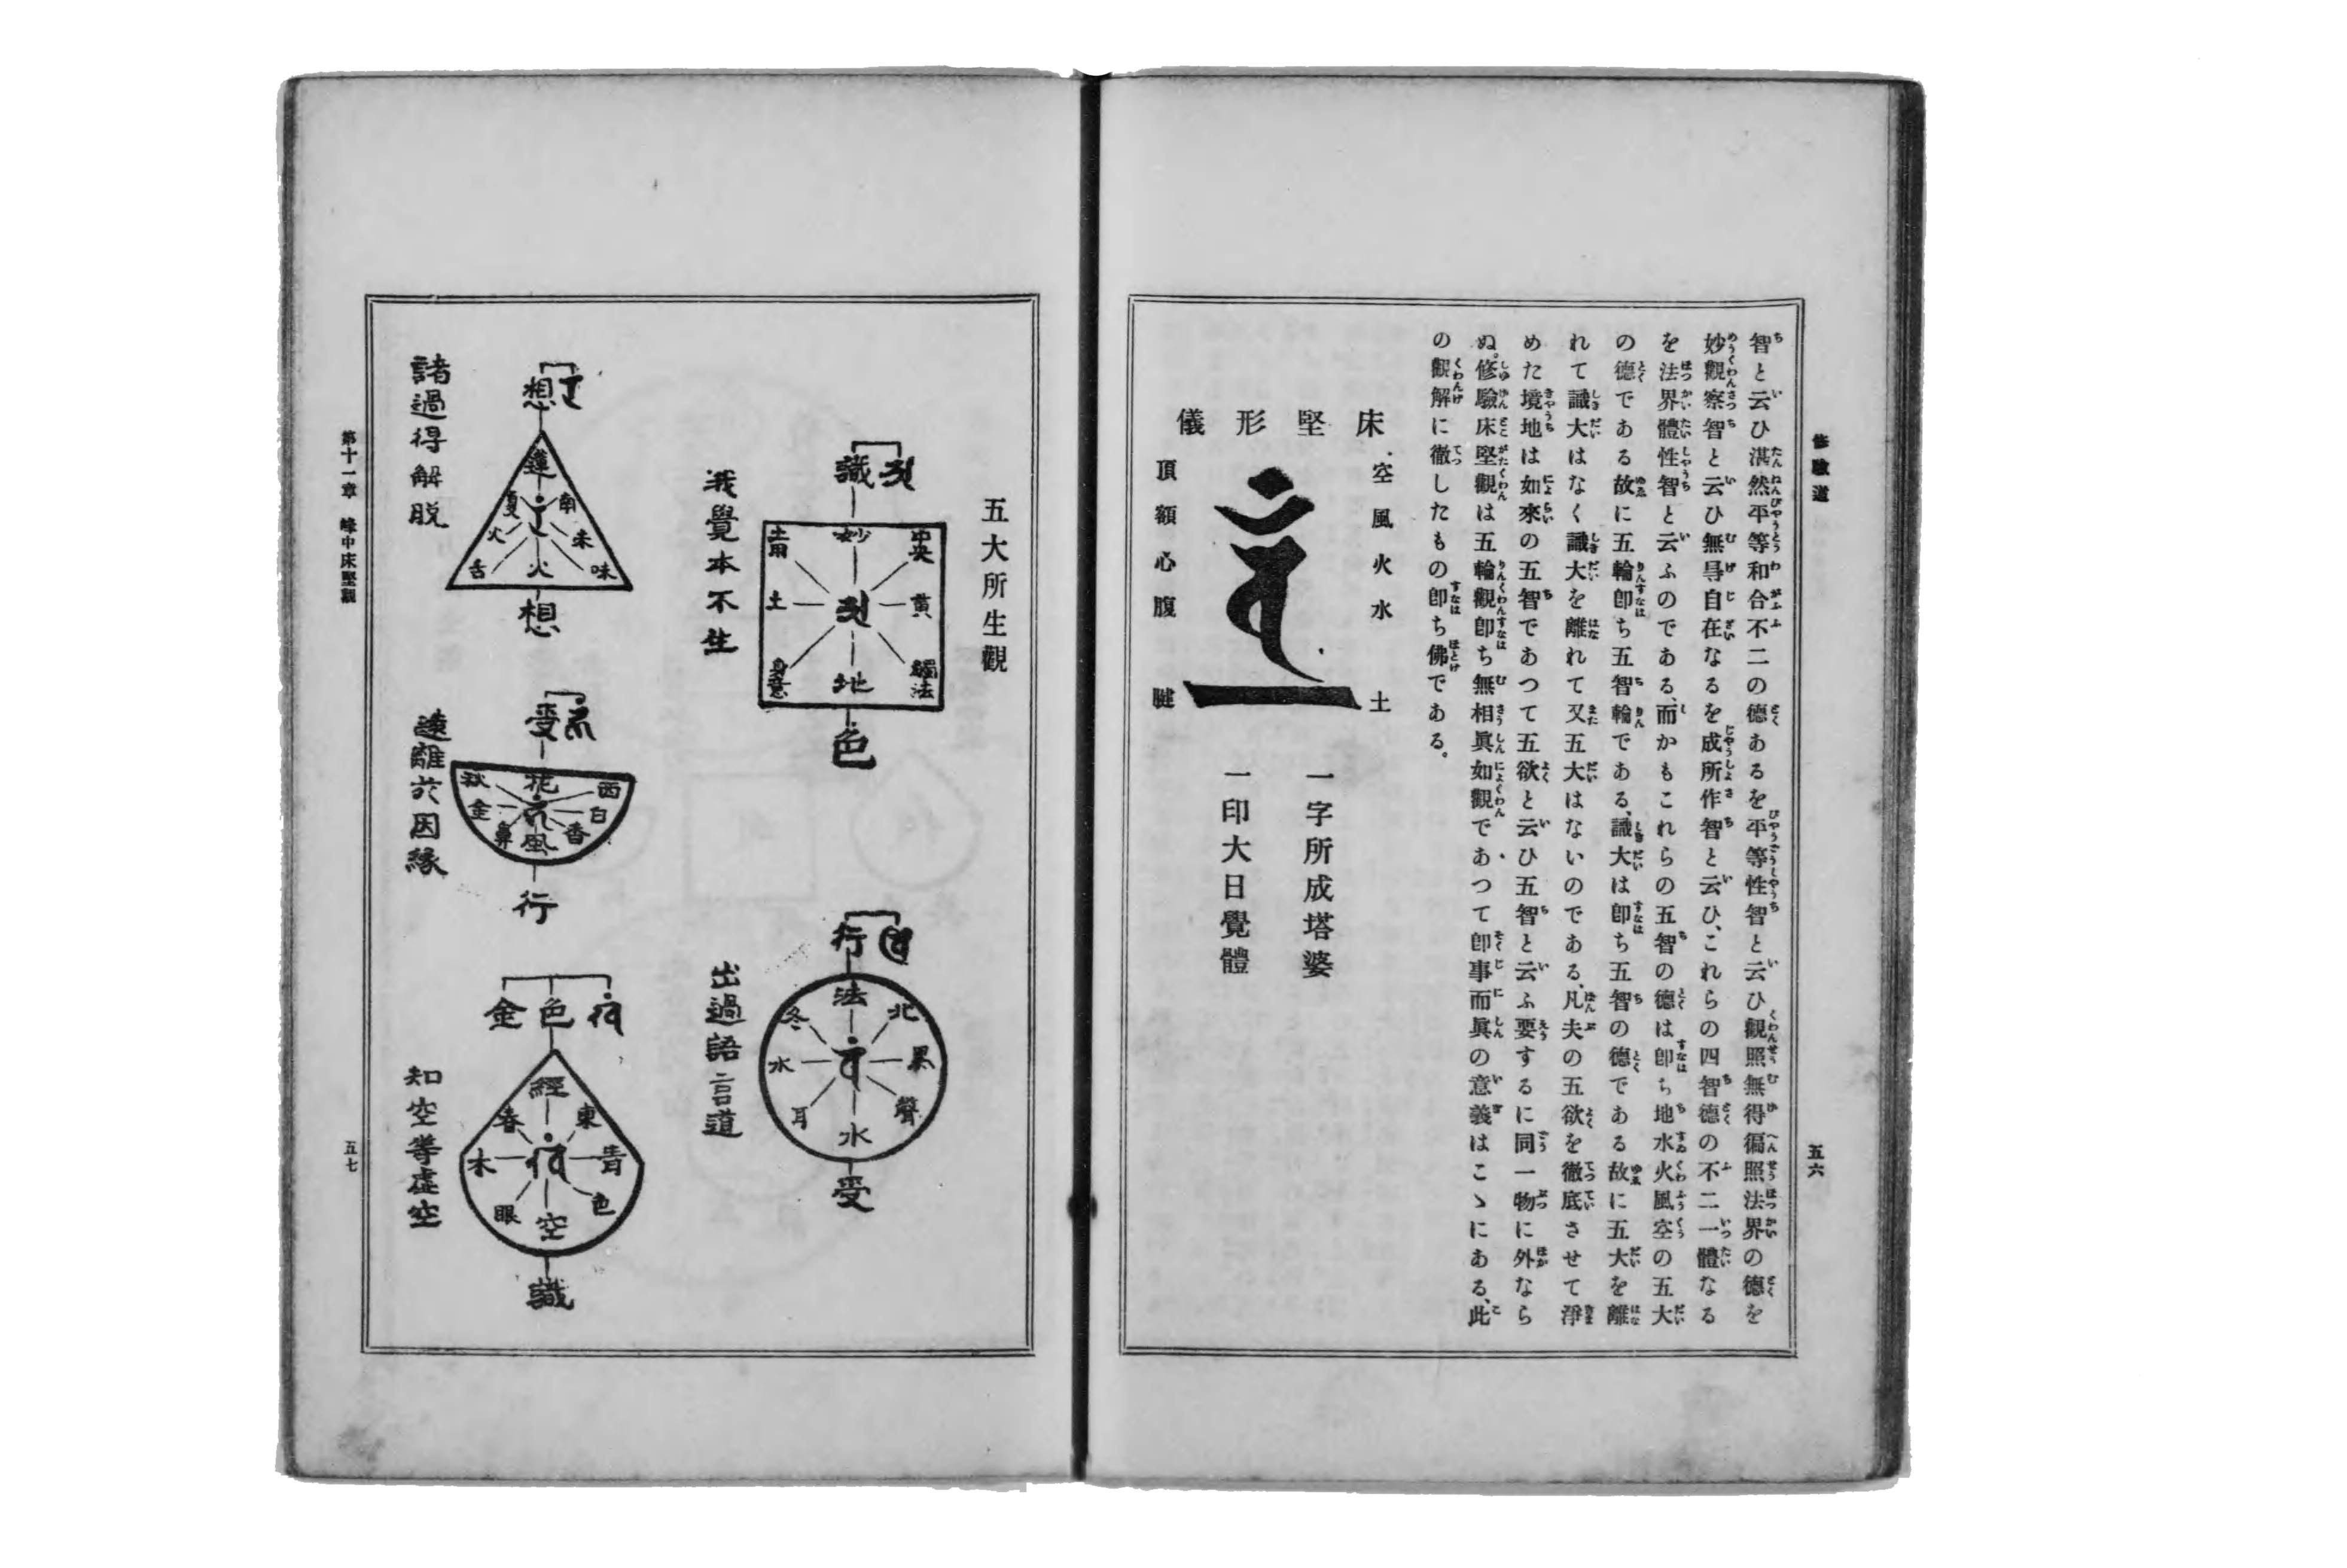 Cinco elementos (filosofia japonesa) – Wikipédia, a enciclopédia livre